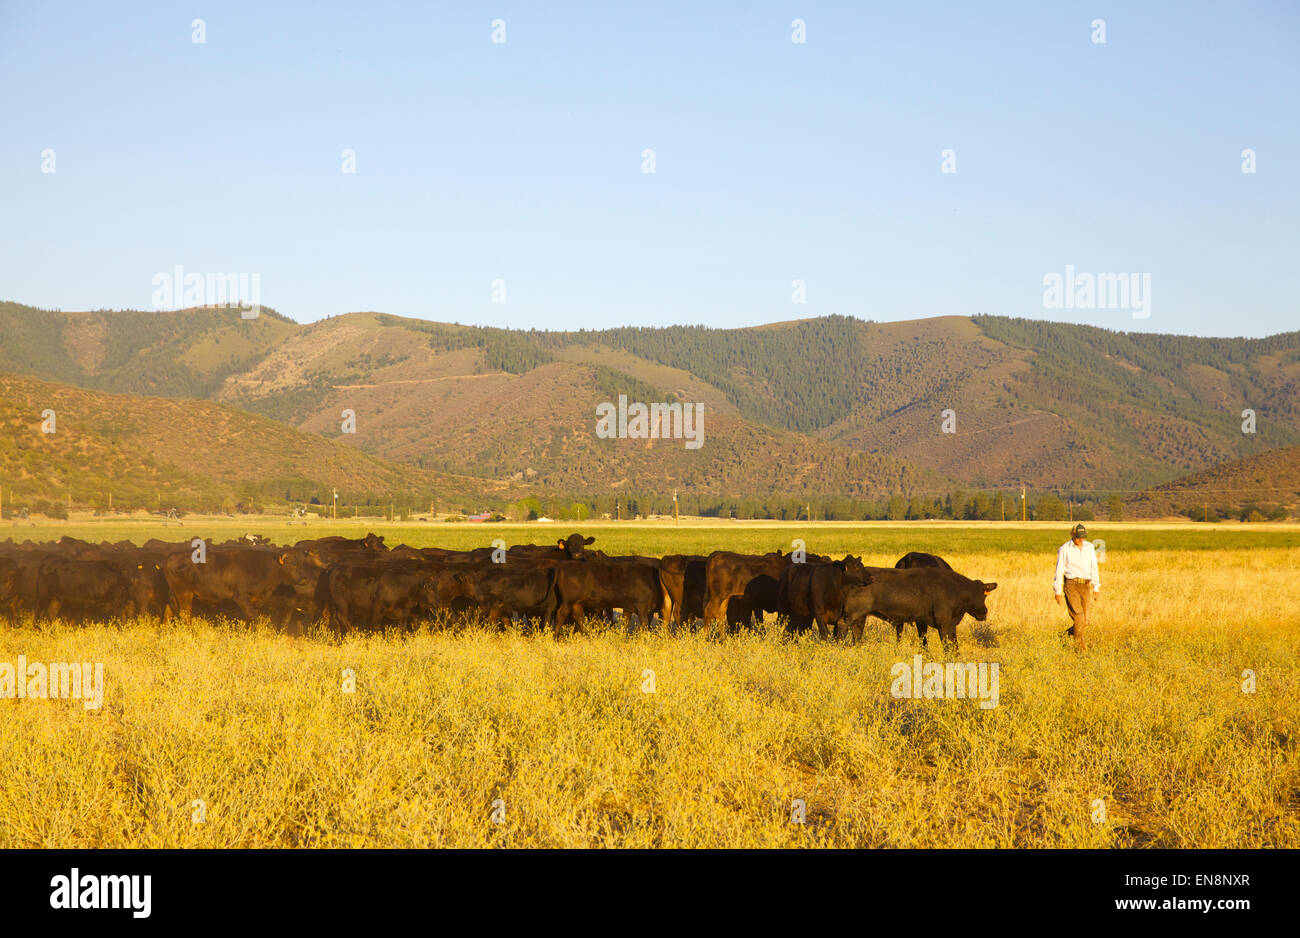 A heard of cattle follow a cowboy walking in a field. Stock Photo